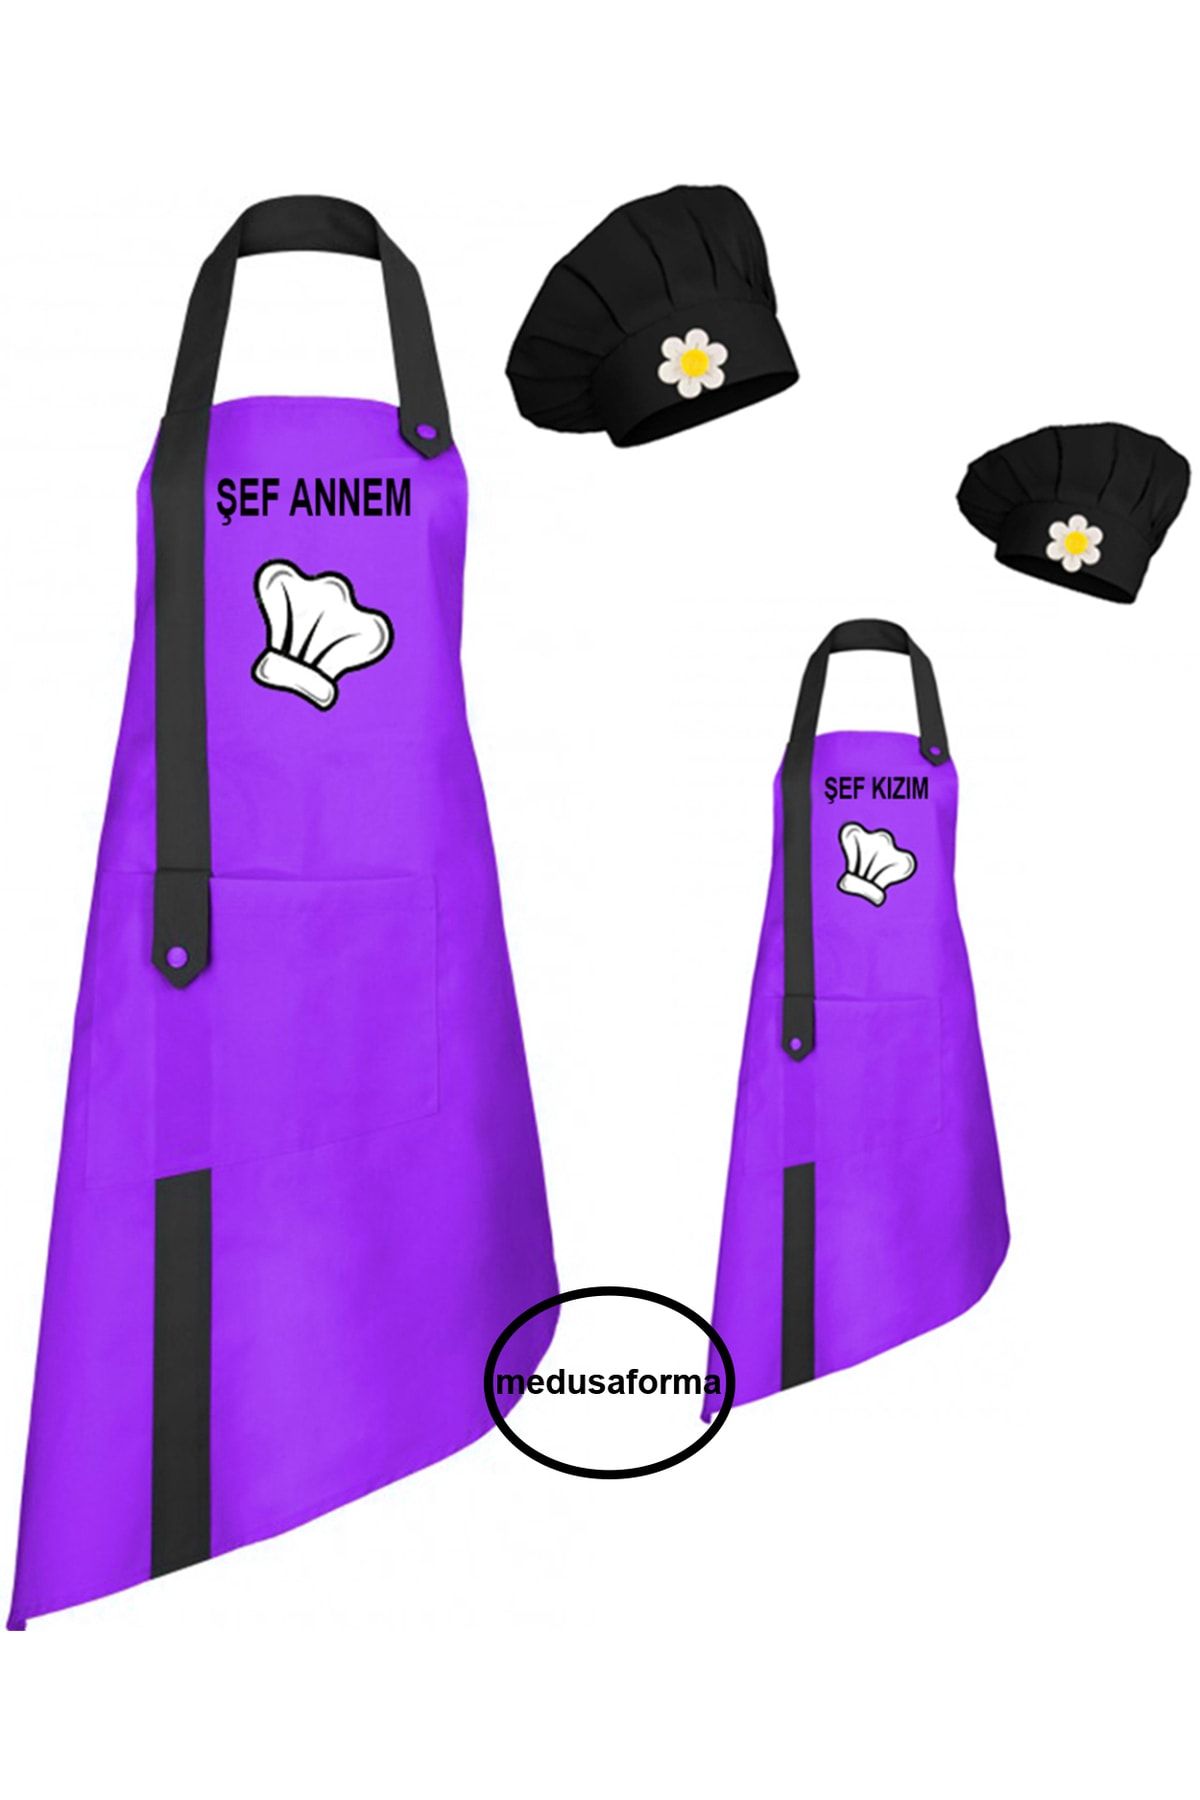 medusaforma Anne Kız Önlük Takım Çocuk Aşçı Kıyafeti Master Şef Mutfak Önlüğü Chef Şef Önlük Kombinleri - Mor